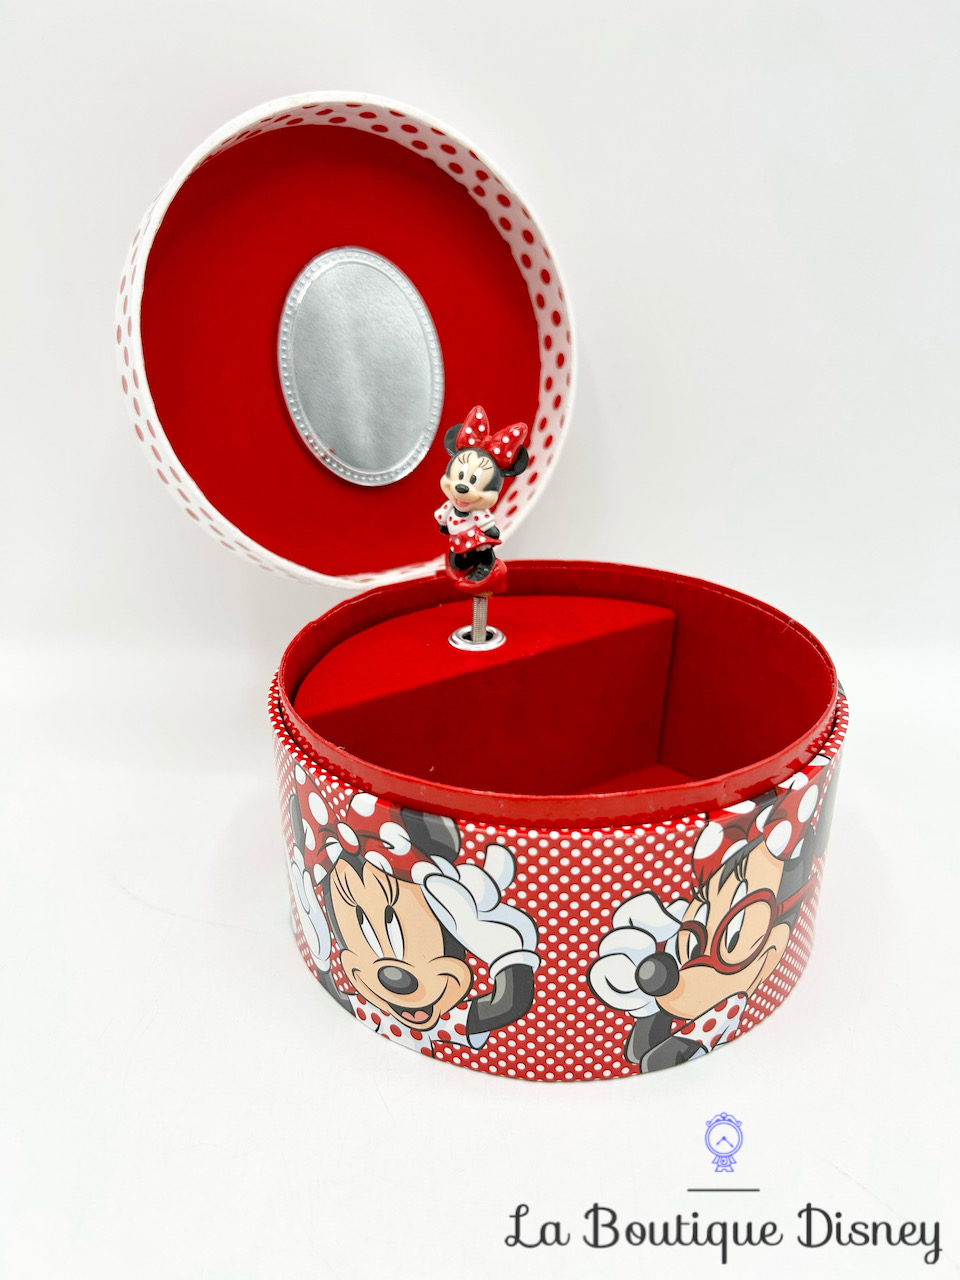 Boite à musique Minnie Mouse noeud Disneyland Paris 2018 Disney rouge pois bijoux musicale